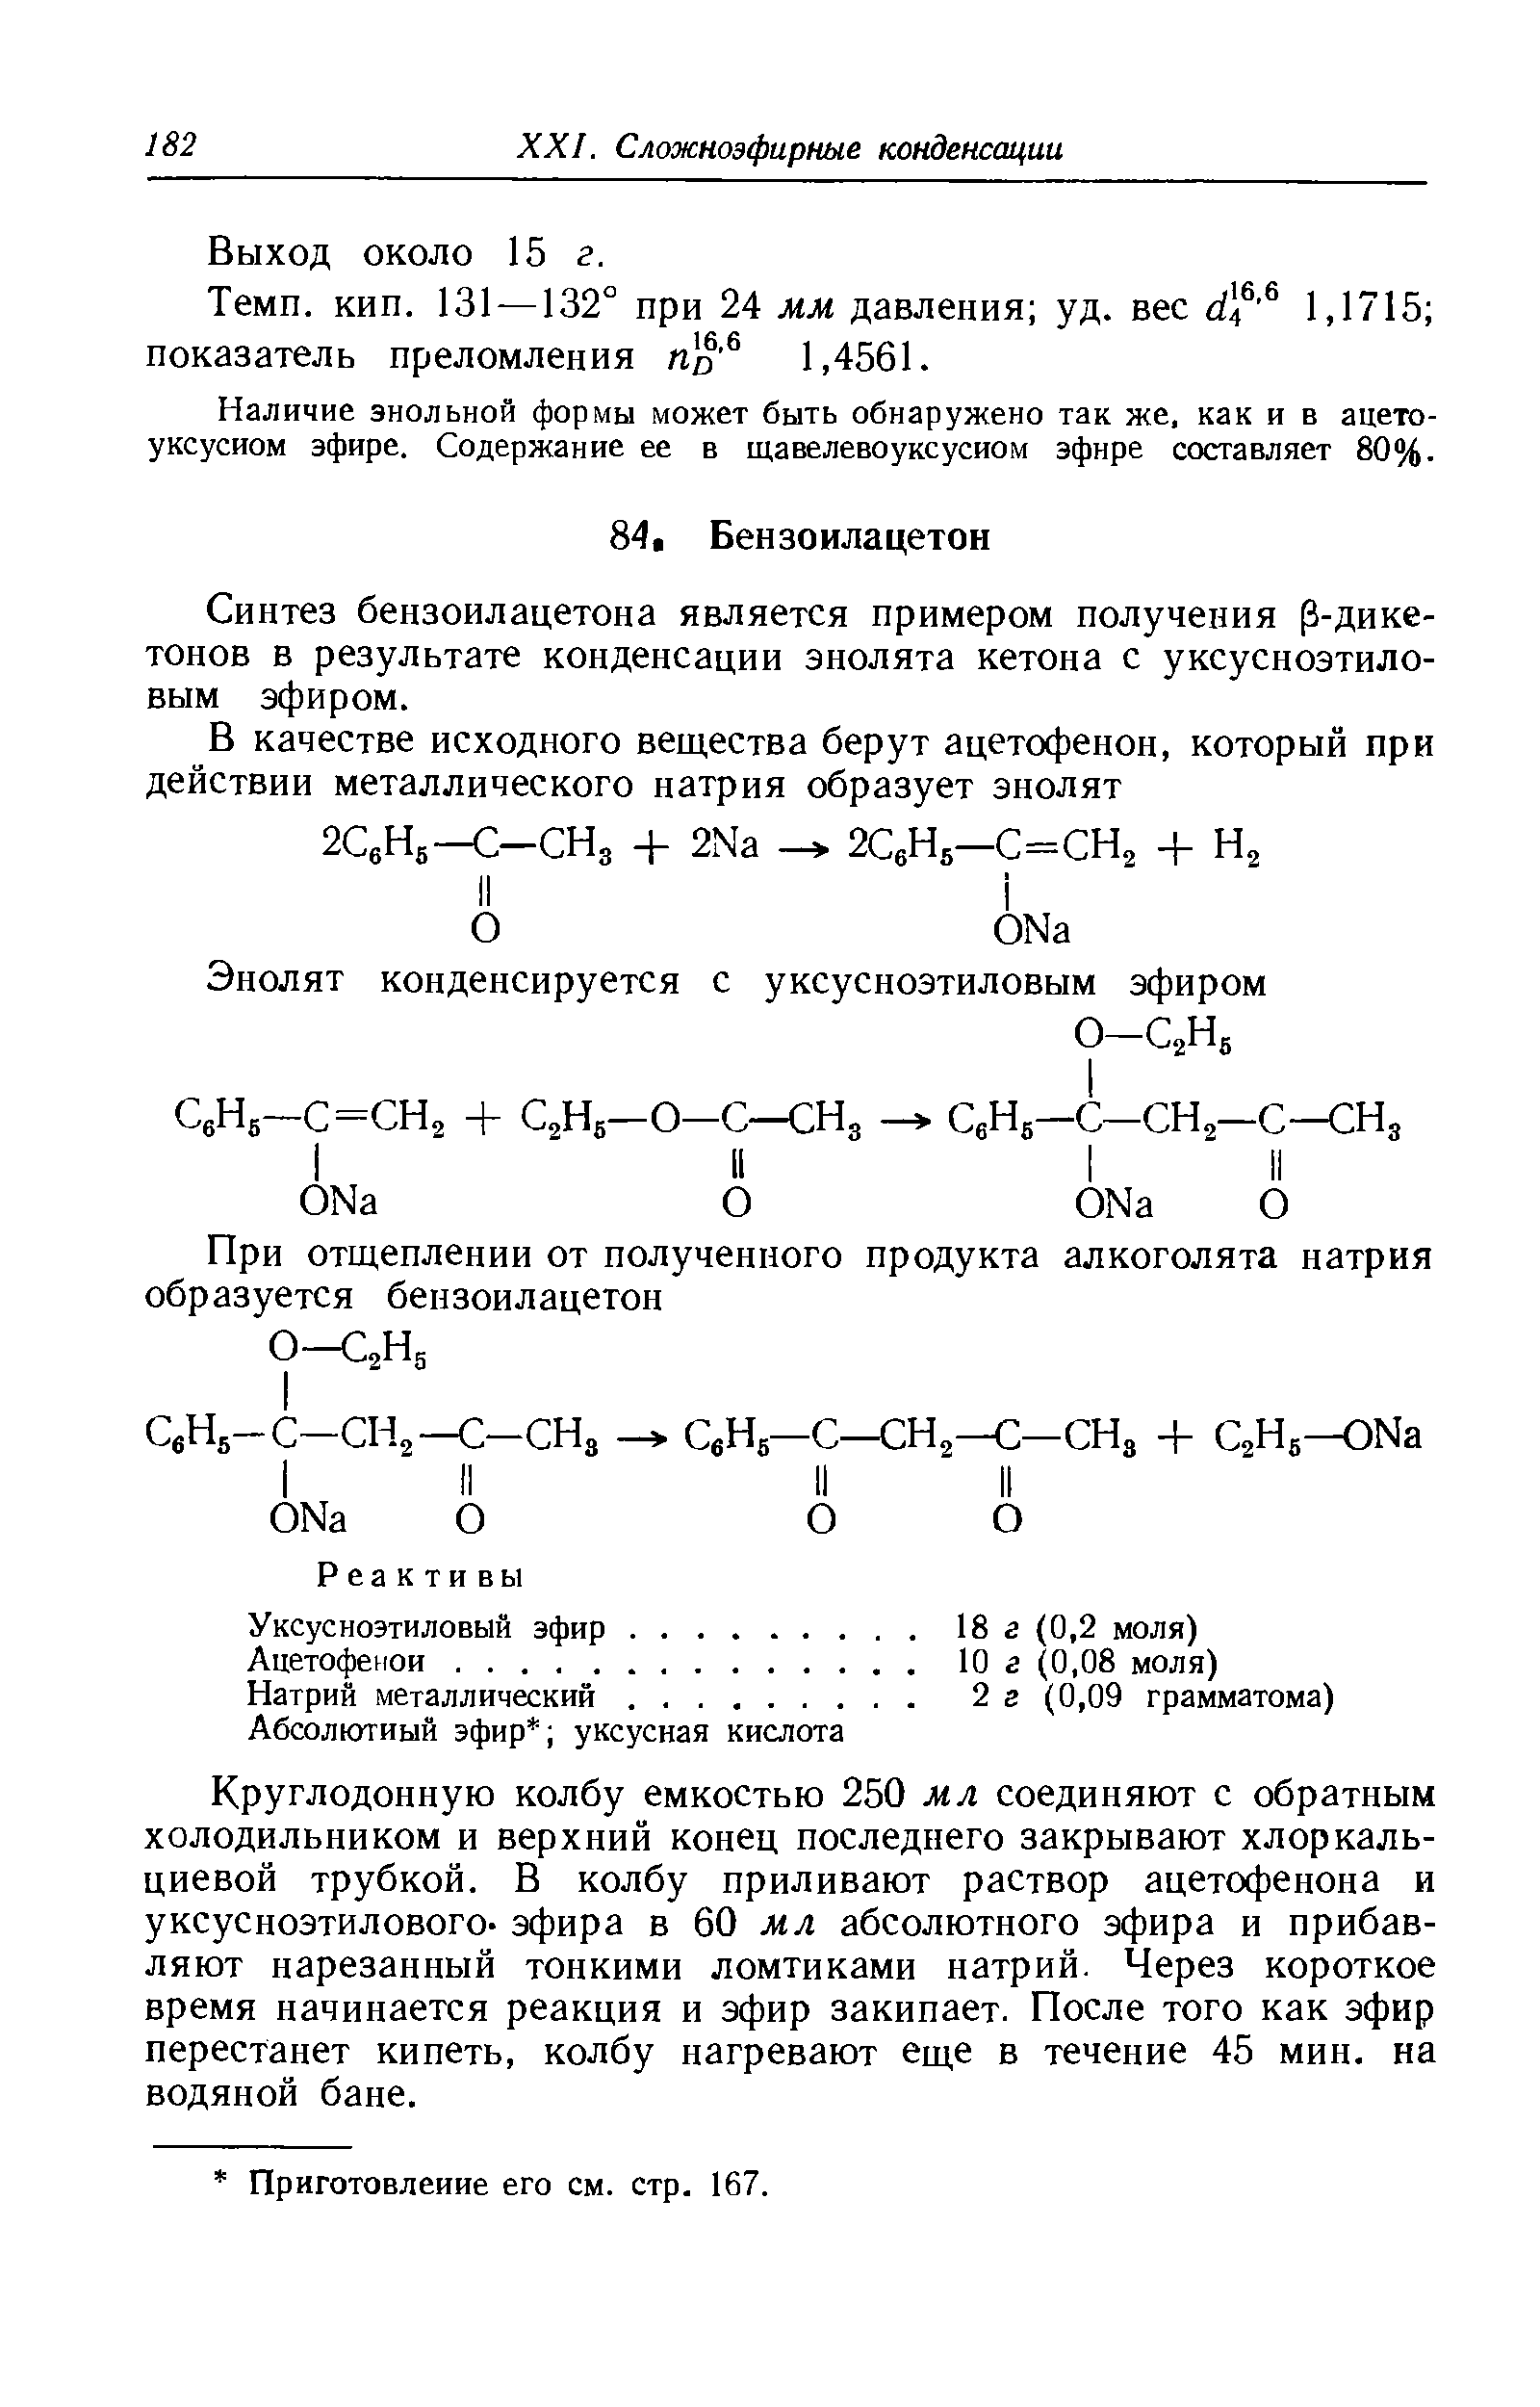 Синтез бензоил ацетон а является примером получения (3-дике-тонов в результате конденсации энолята кетона с уксусноэтиловым эфиром.